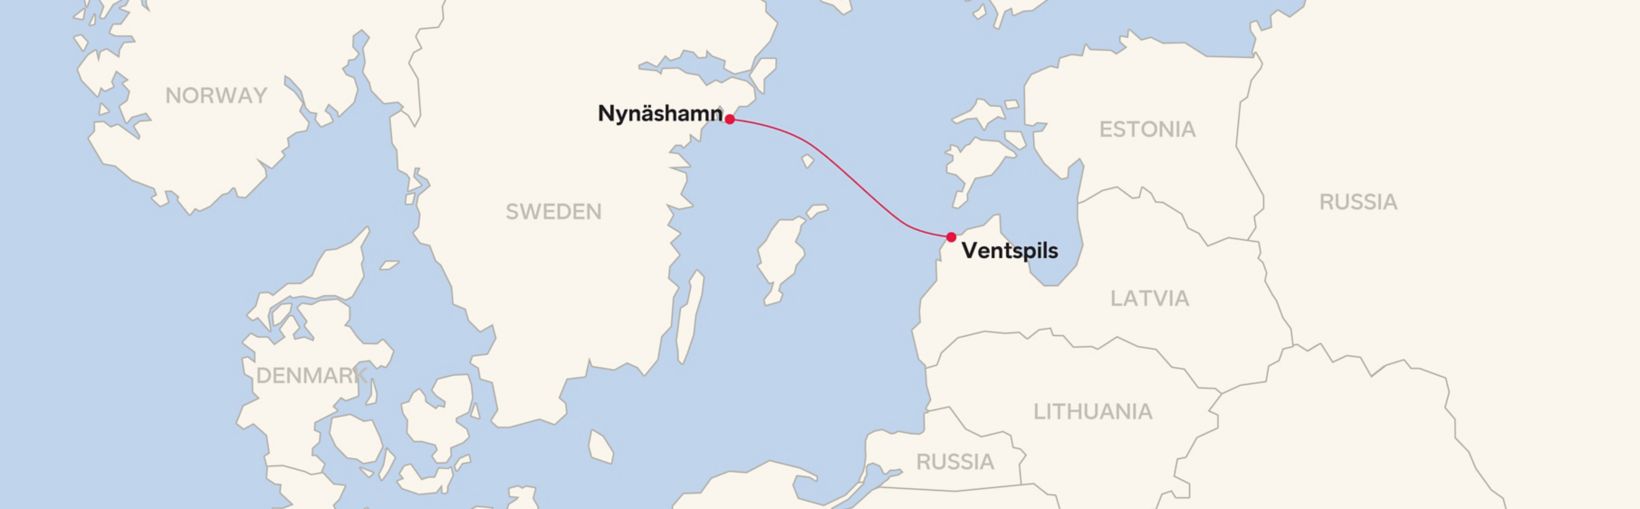 Mapa de la ruta de Ventspils - Nynäshamn